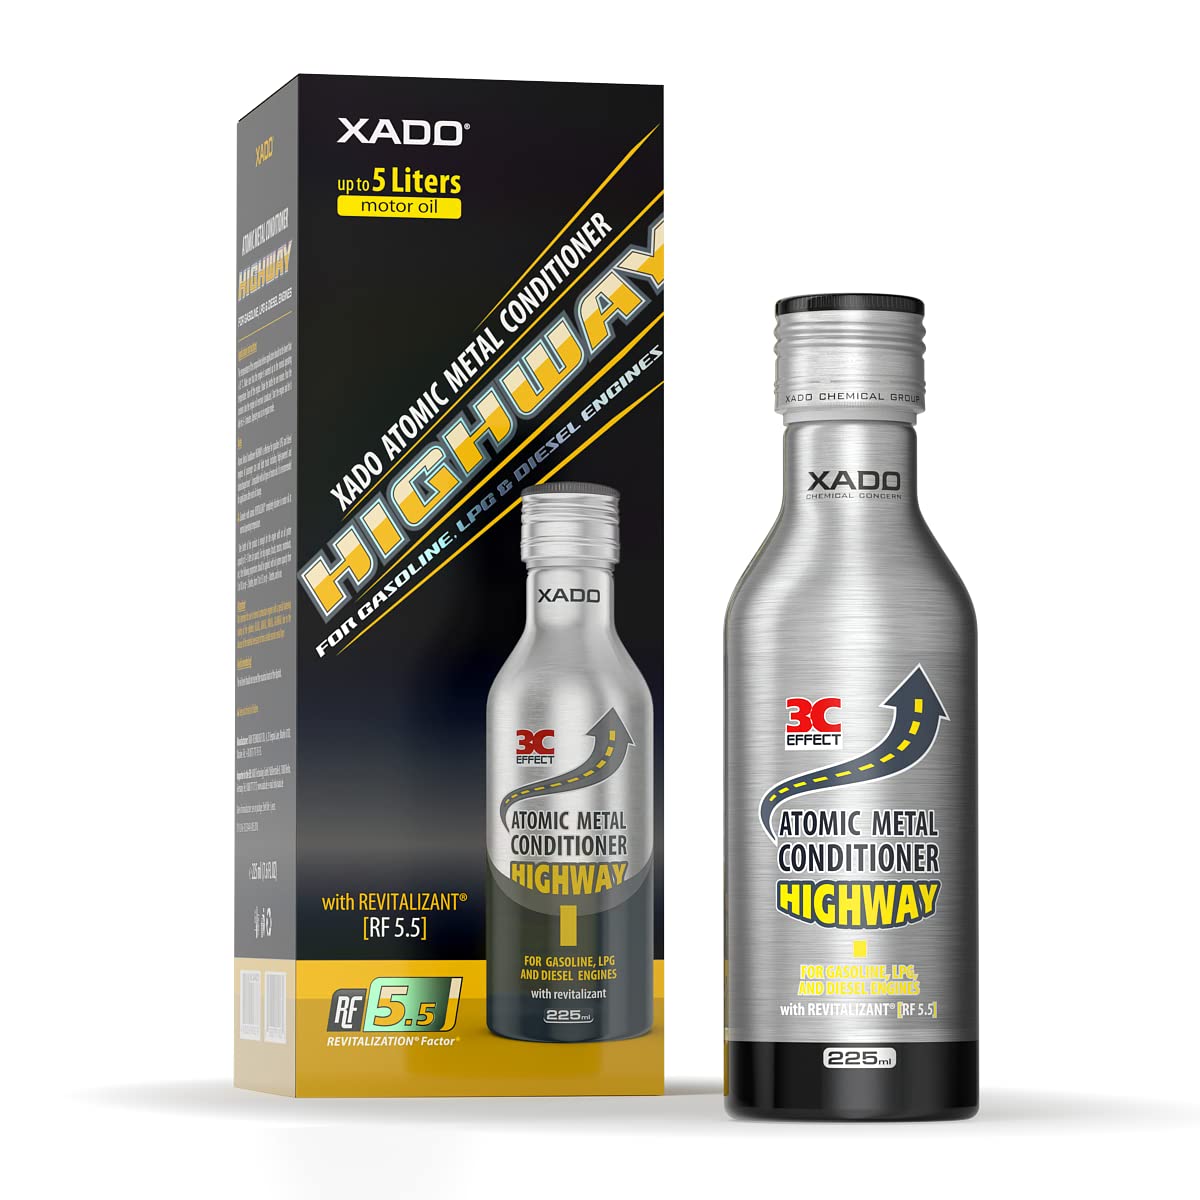 XADO Motor-Öl-Additiv Atomarer Metallconditioner Highway mit Revitalizant® für Motor- Verschleiss-Schutz und Reparatur von XADO